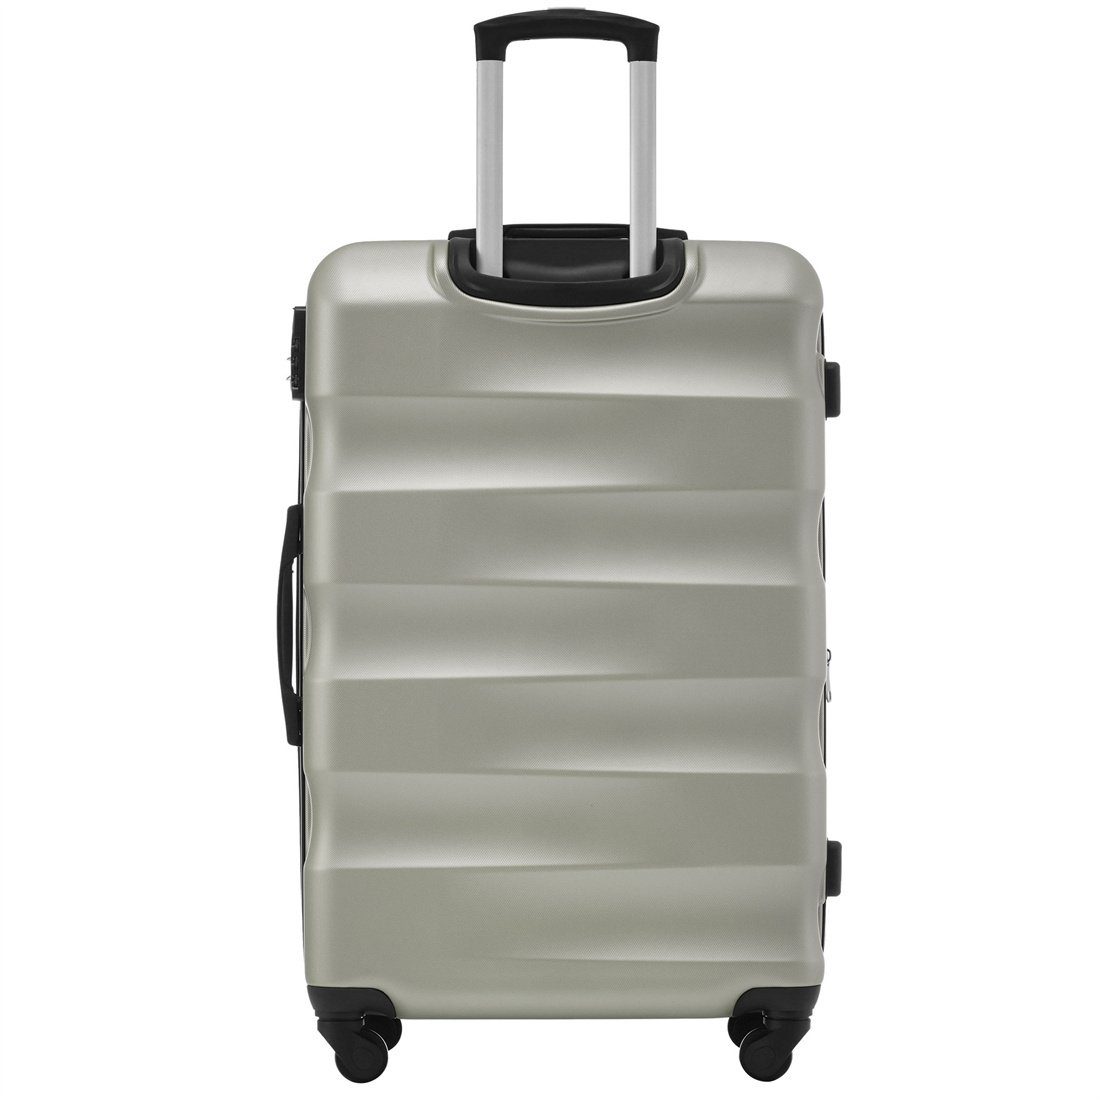 Koffer Hartschalen-Koffer, 69*44.5*26.5cm, Goldgrün DÖRÖY Reisekoffer, ABS-Material